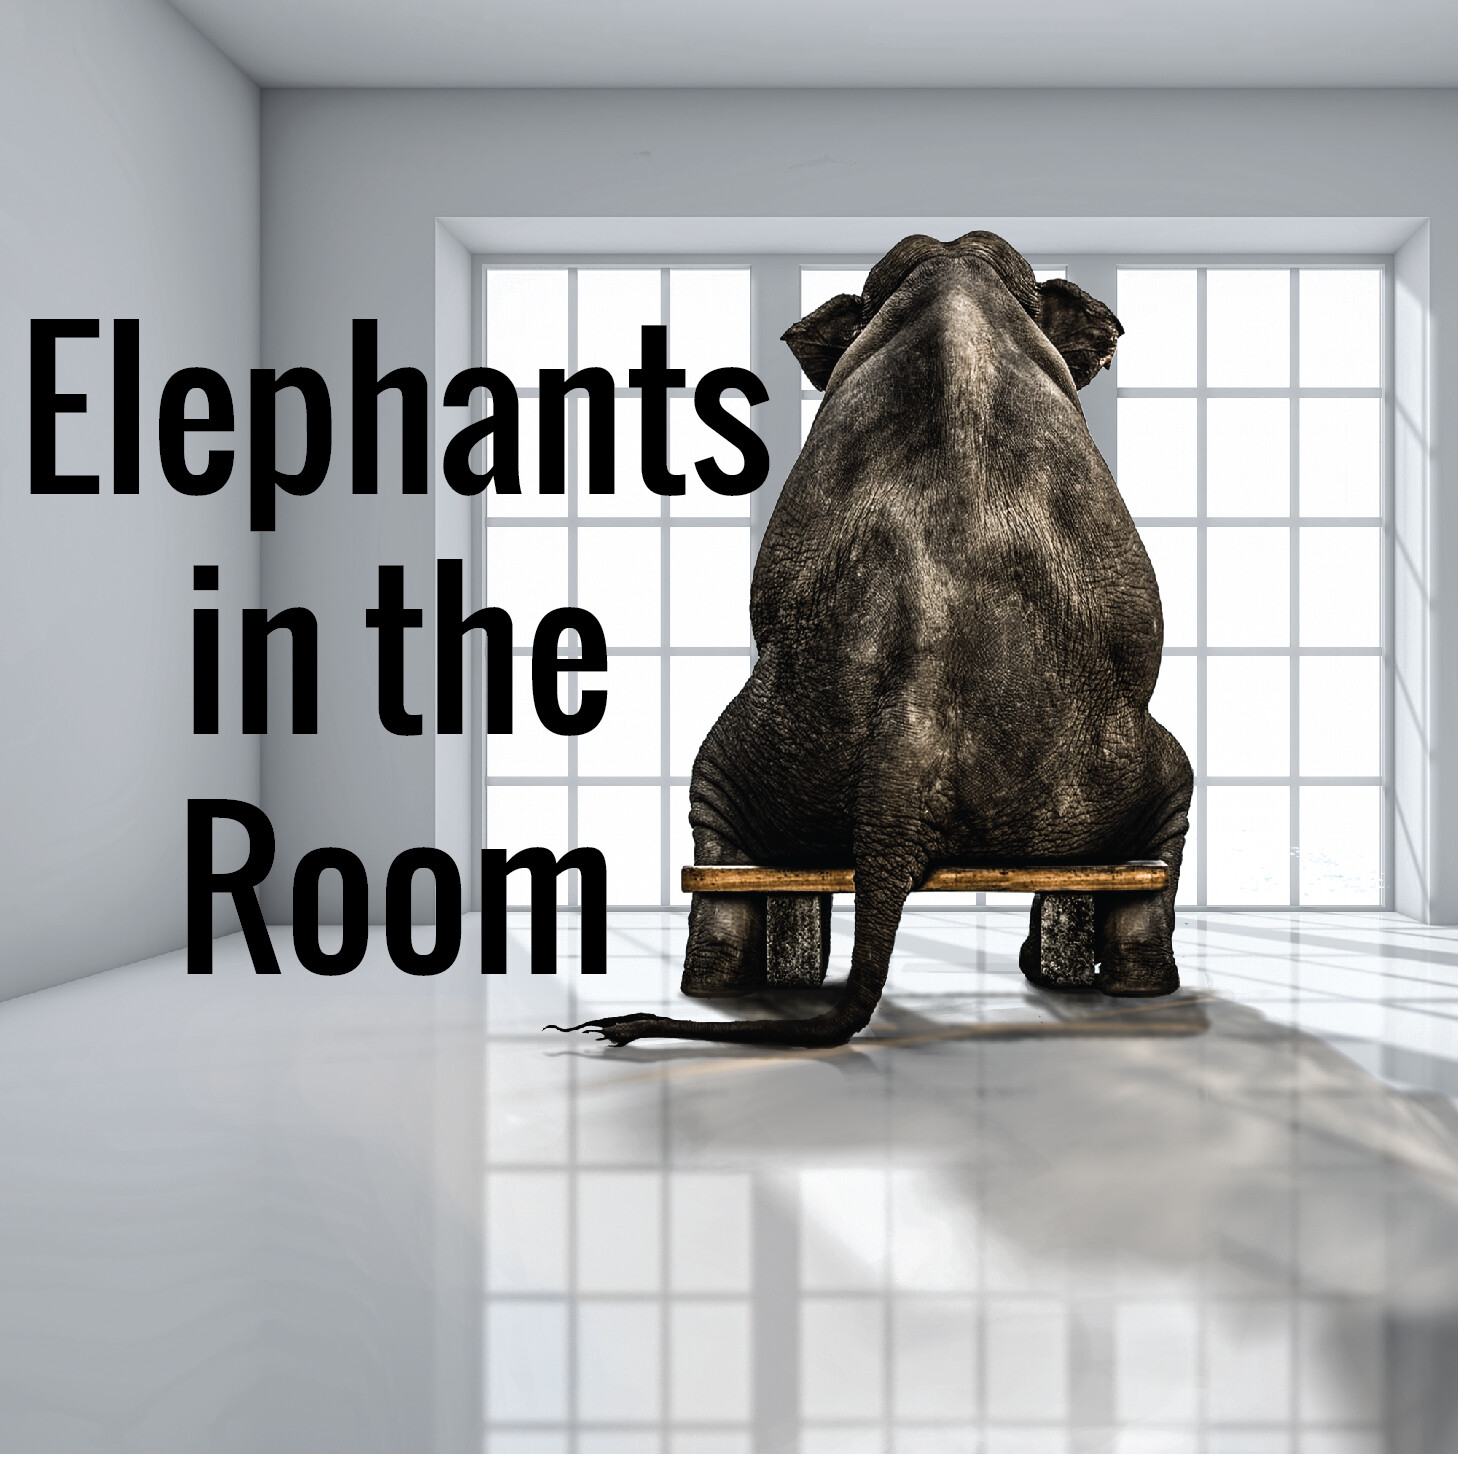 Elephants in the Room: Debt